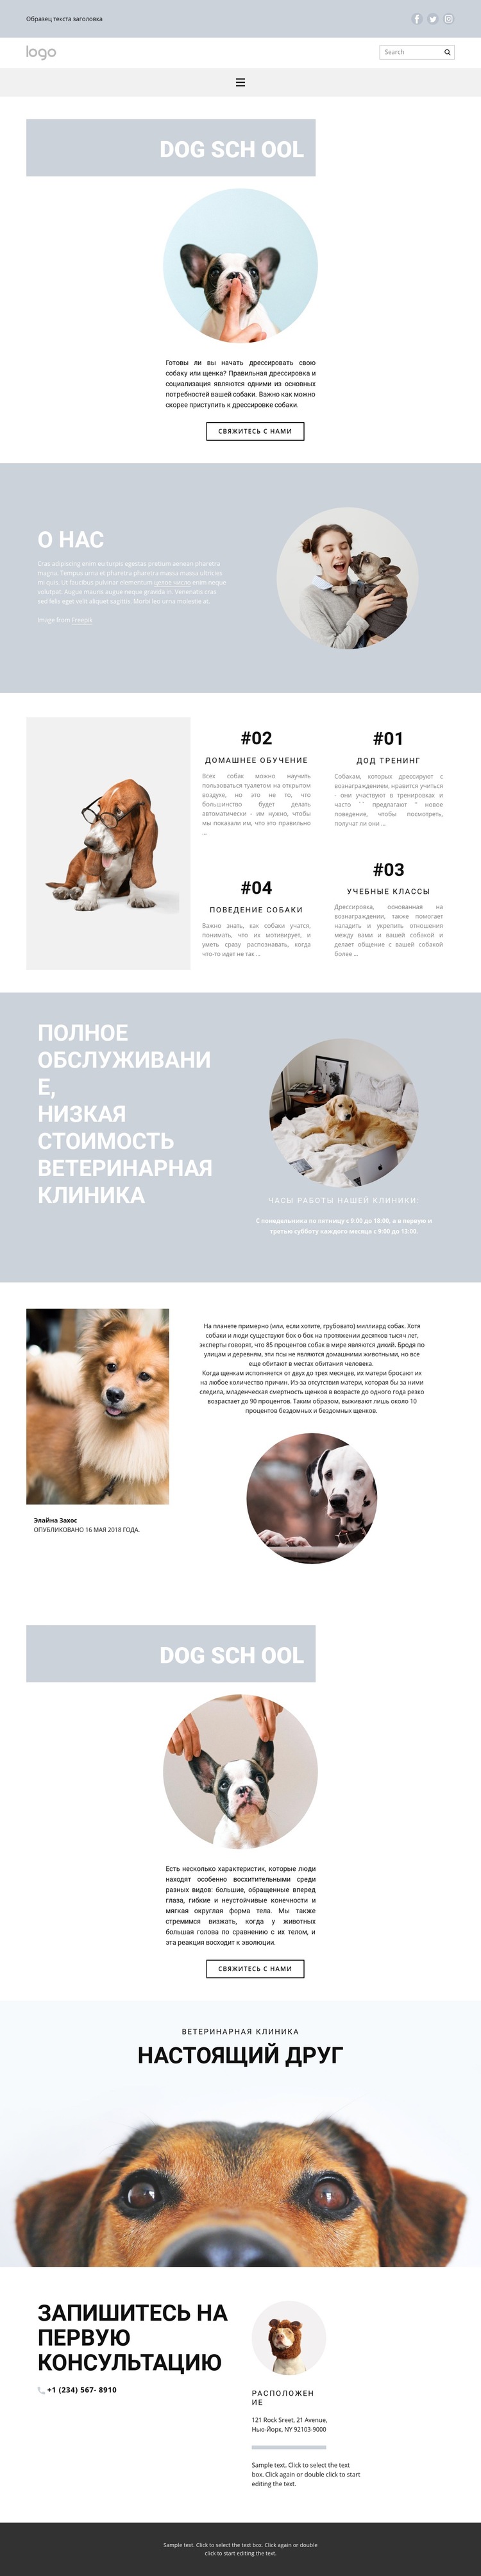 Разведение собак Шаблон веб-сайта